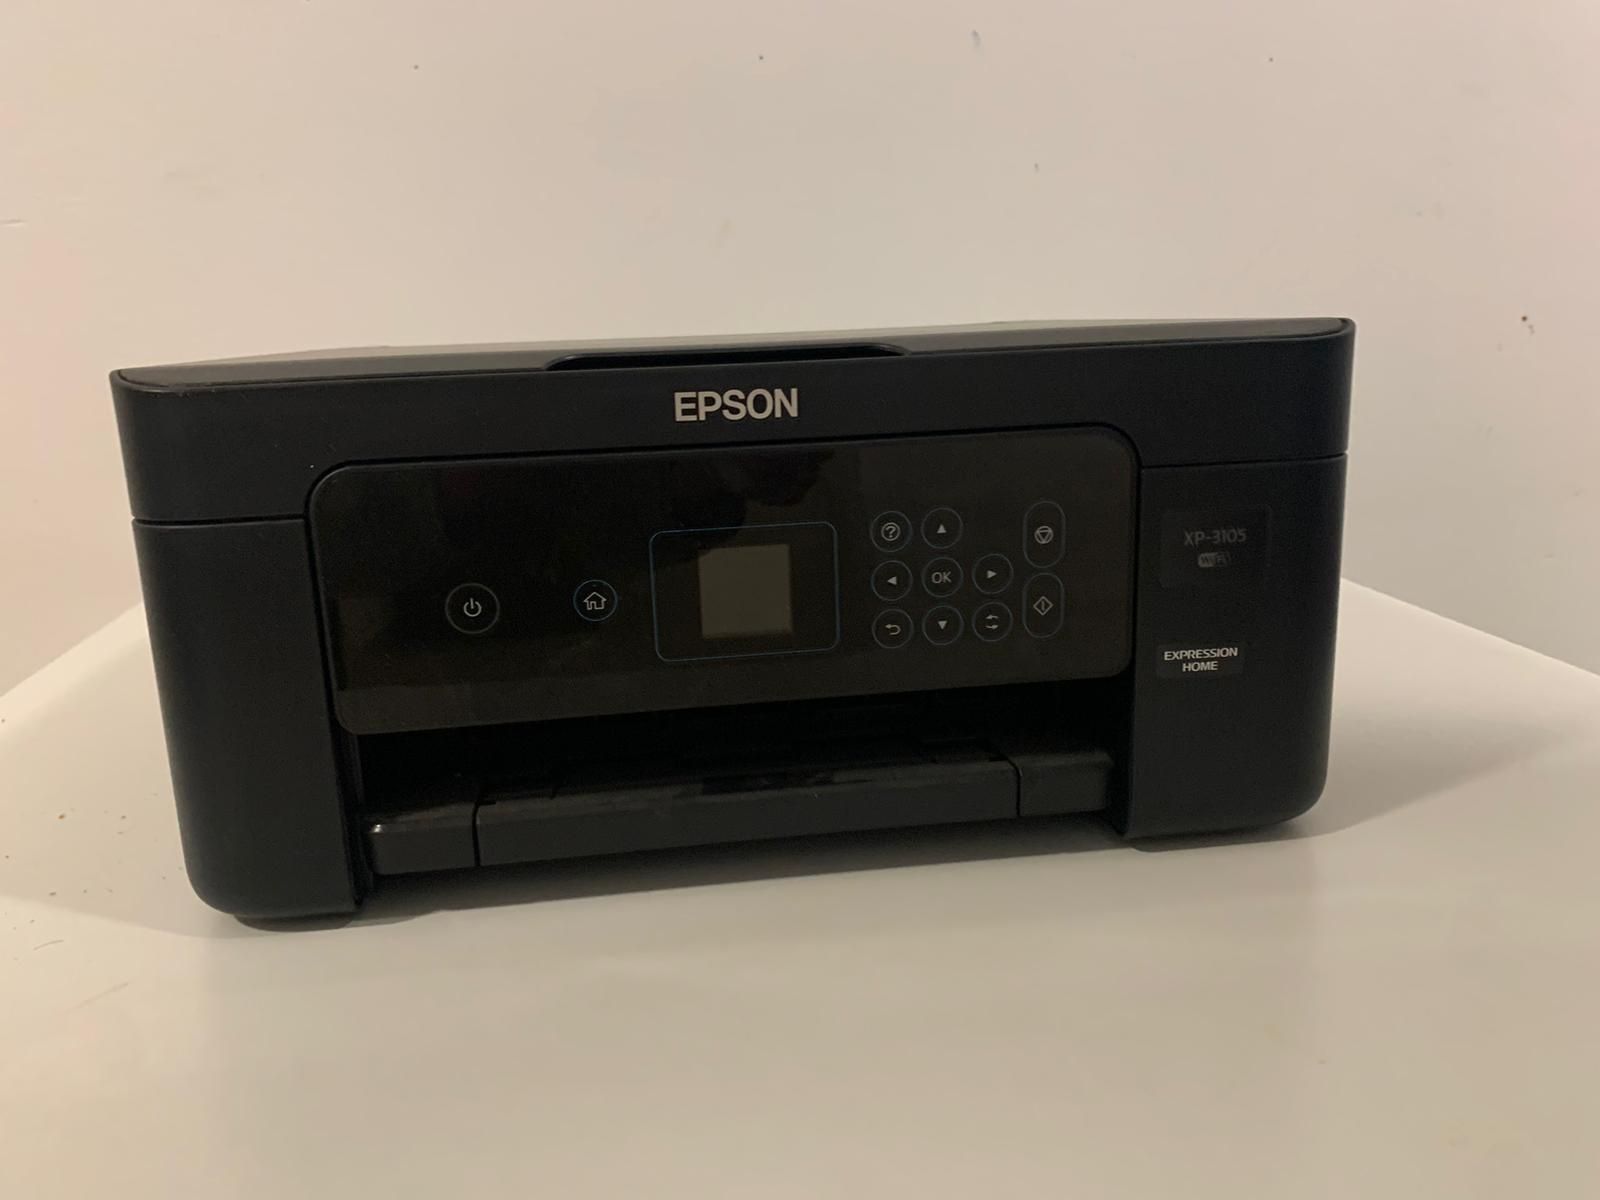 Epson XP3105 WiFi